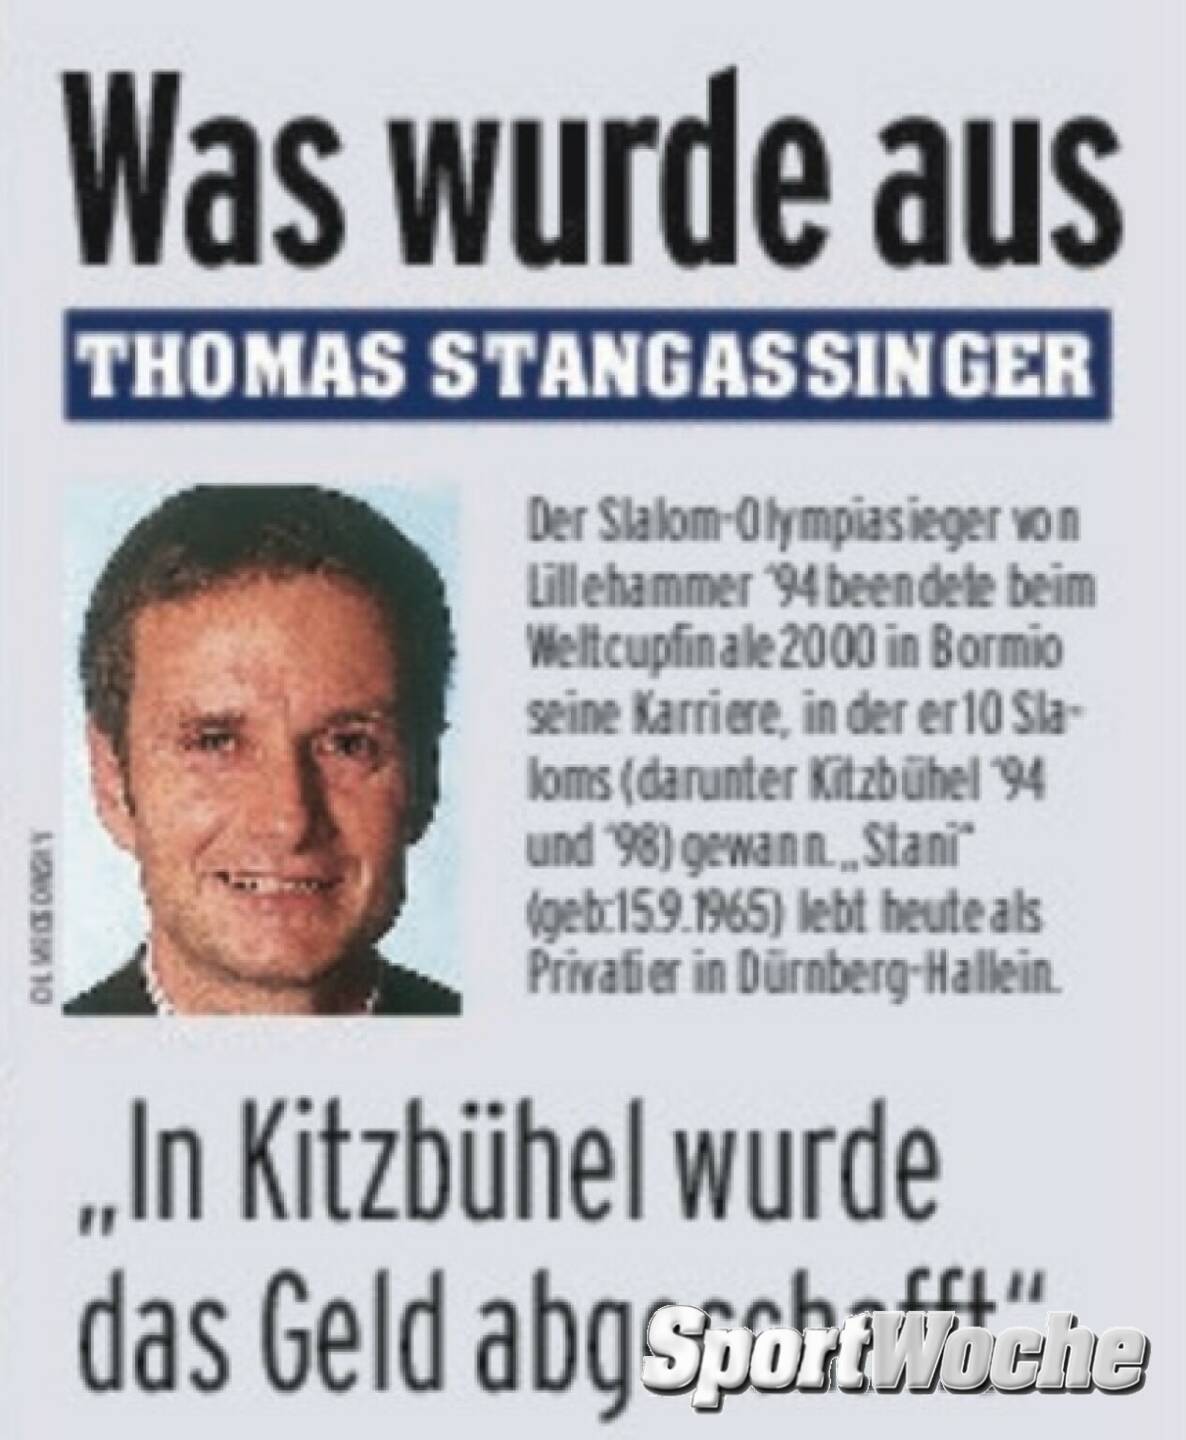 27.02.2022: Heute vor 28 Jahren: #thomasstangassinger gewinnt in @hafjell #olympiagold im #slalom und wird @sporthilfe.at #sportlerdesjahres 1994 #oesv @ski_austria_alpin_herren 